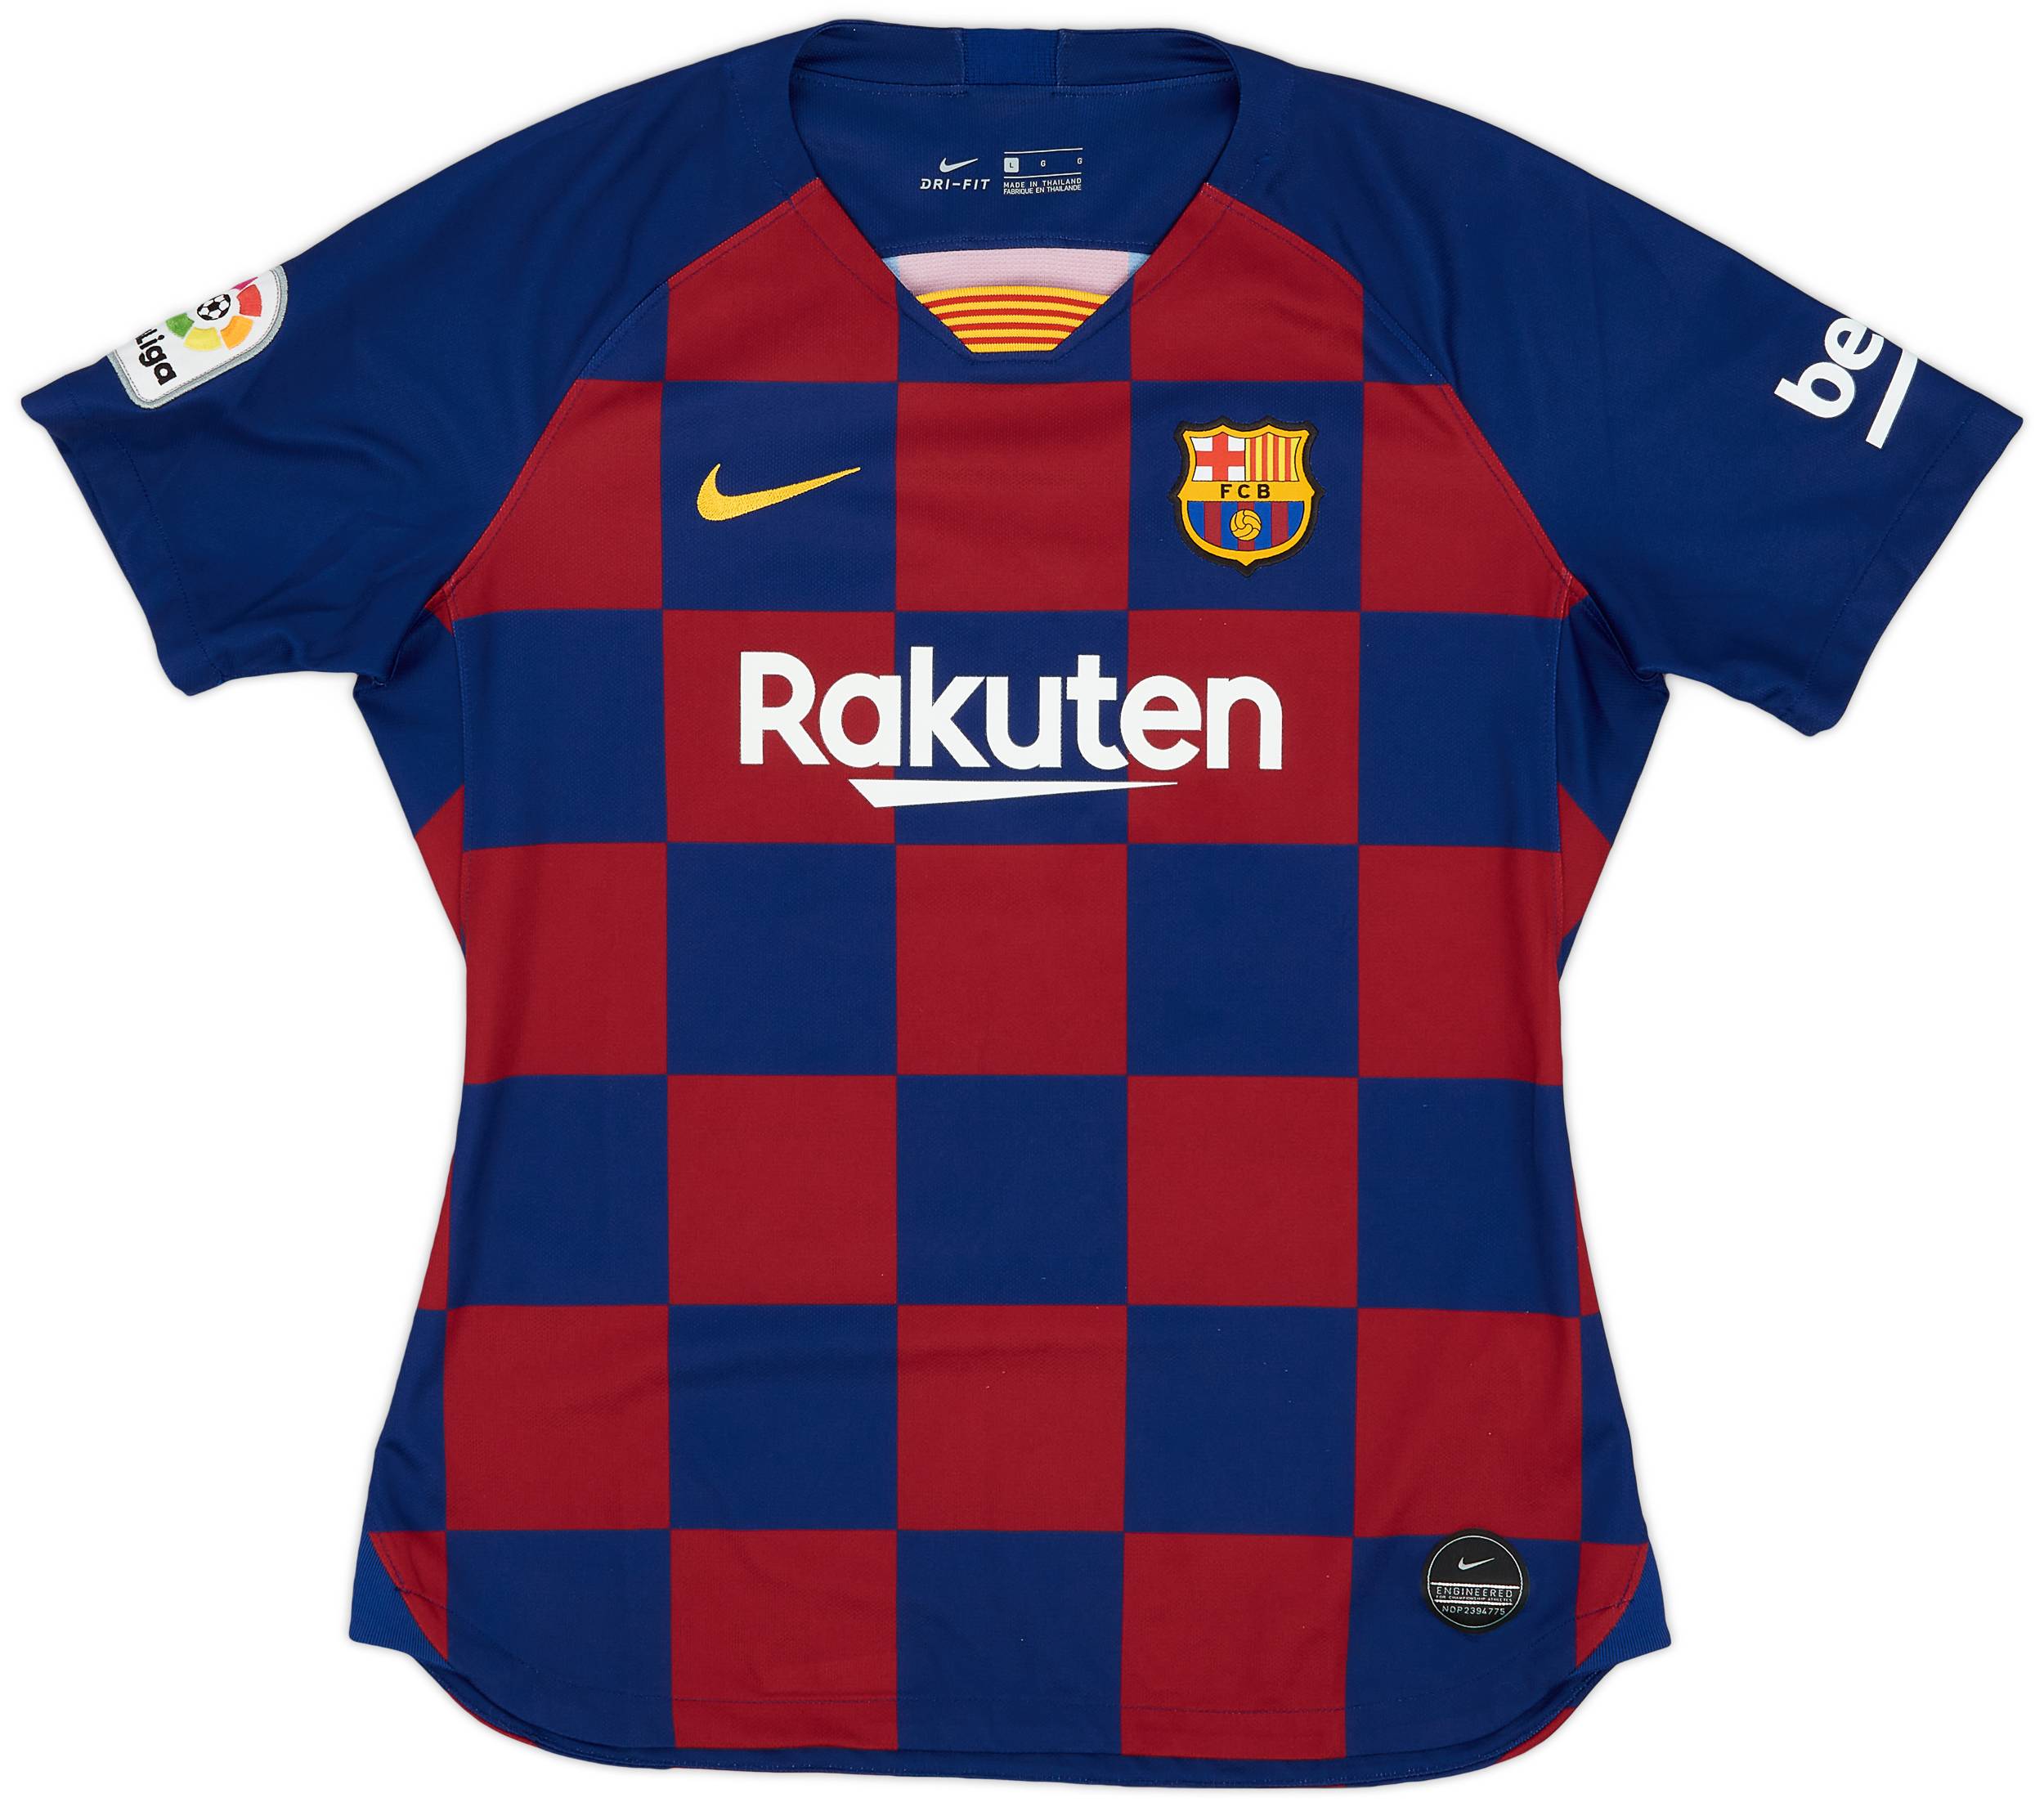 2019-20 Barcelona Home Shirt - 9/10 - (Women's L)